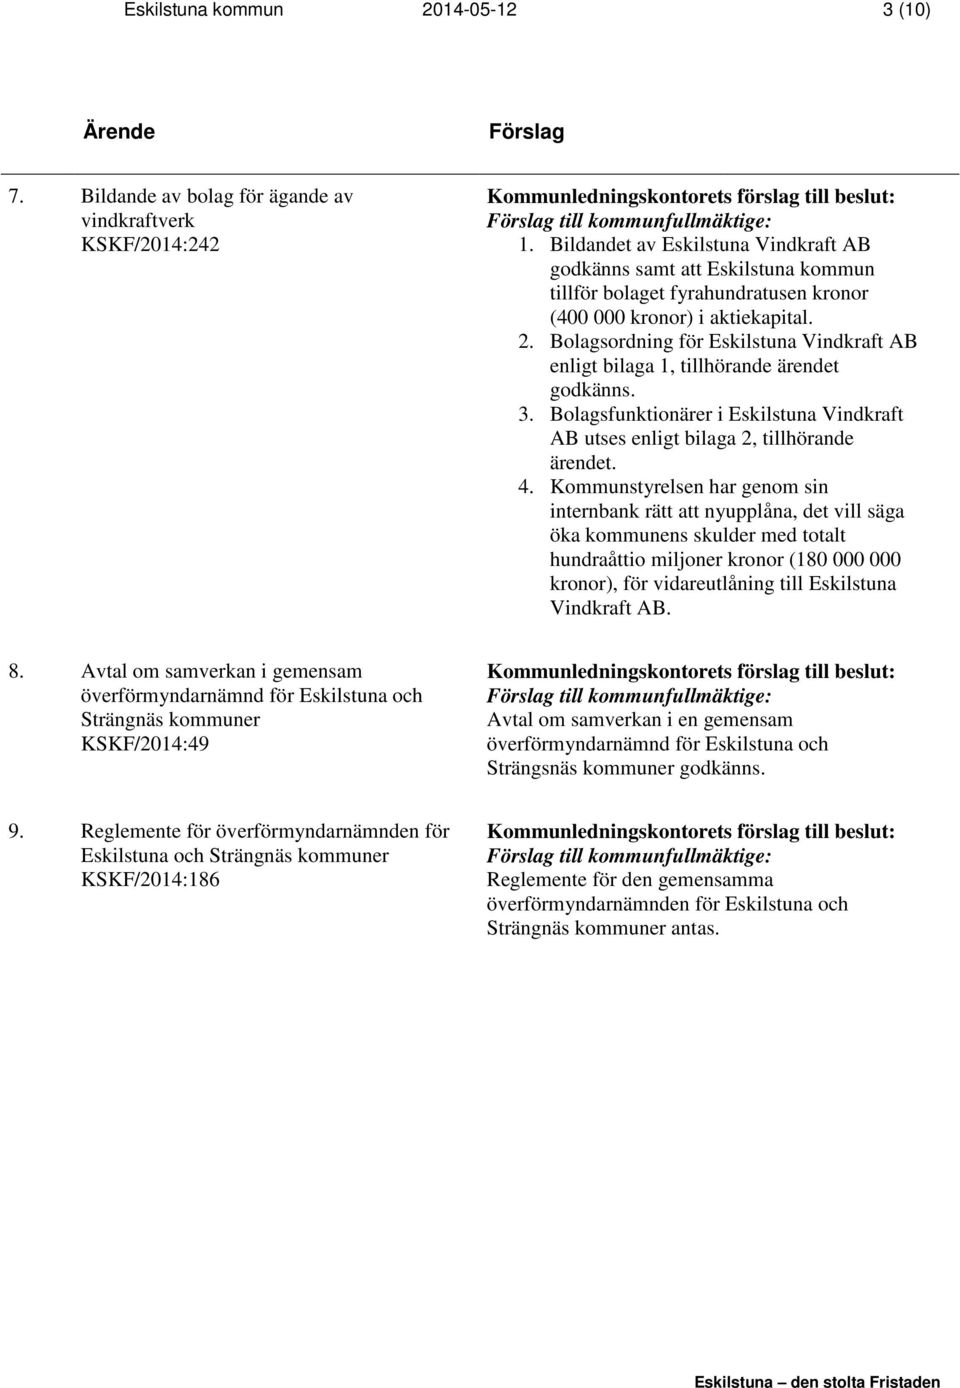 Bolagsordning för Eskilstuna Vindkraft AB enligt bilaga 1, tillhörande ärendet godkänns. 3. Bolagsfunktionärer i Eskilstuna Vindkraft AB utses enligt bilaga 2, tillhörande ärendet. 4.